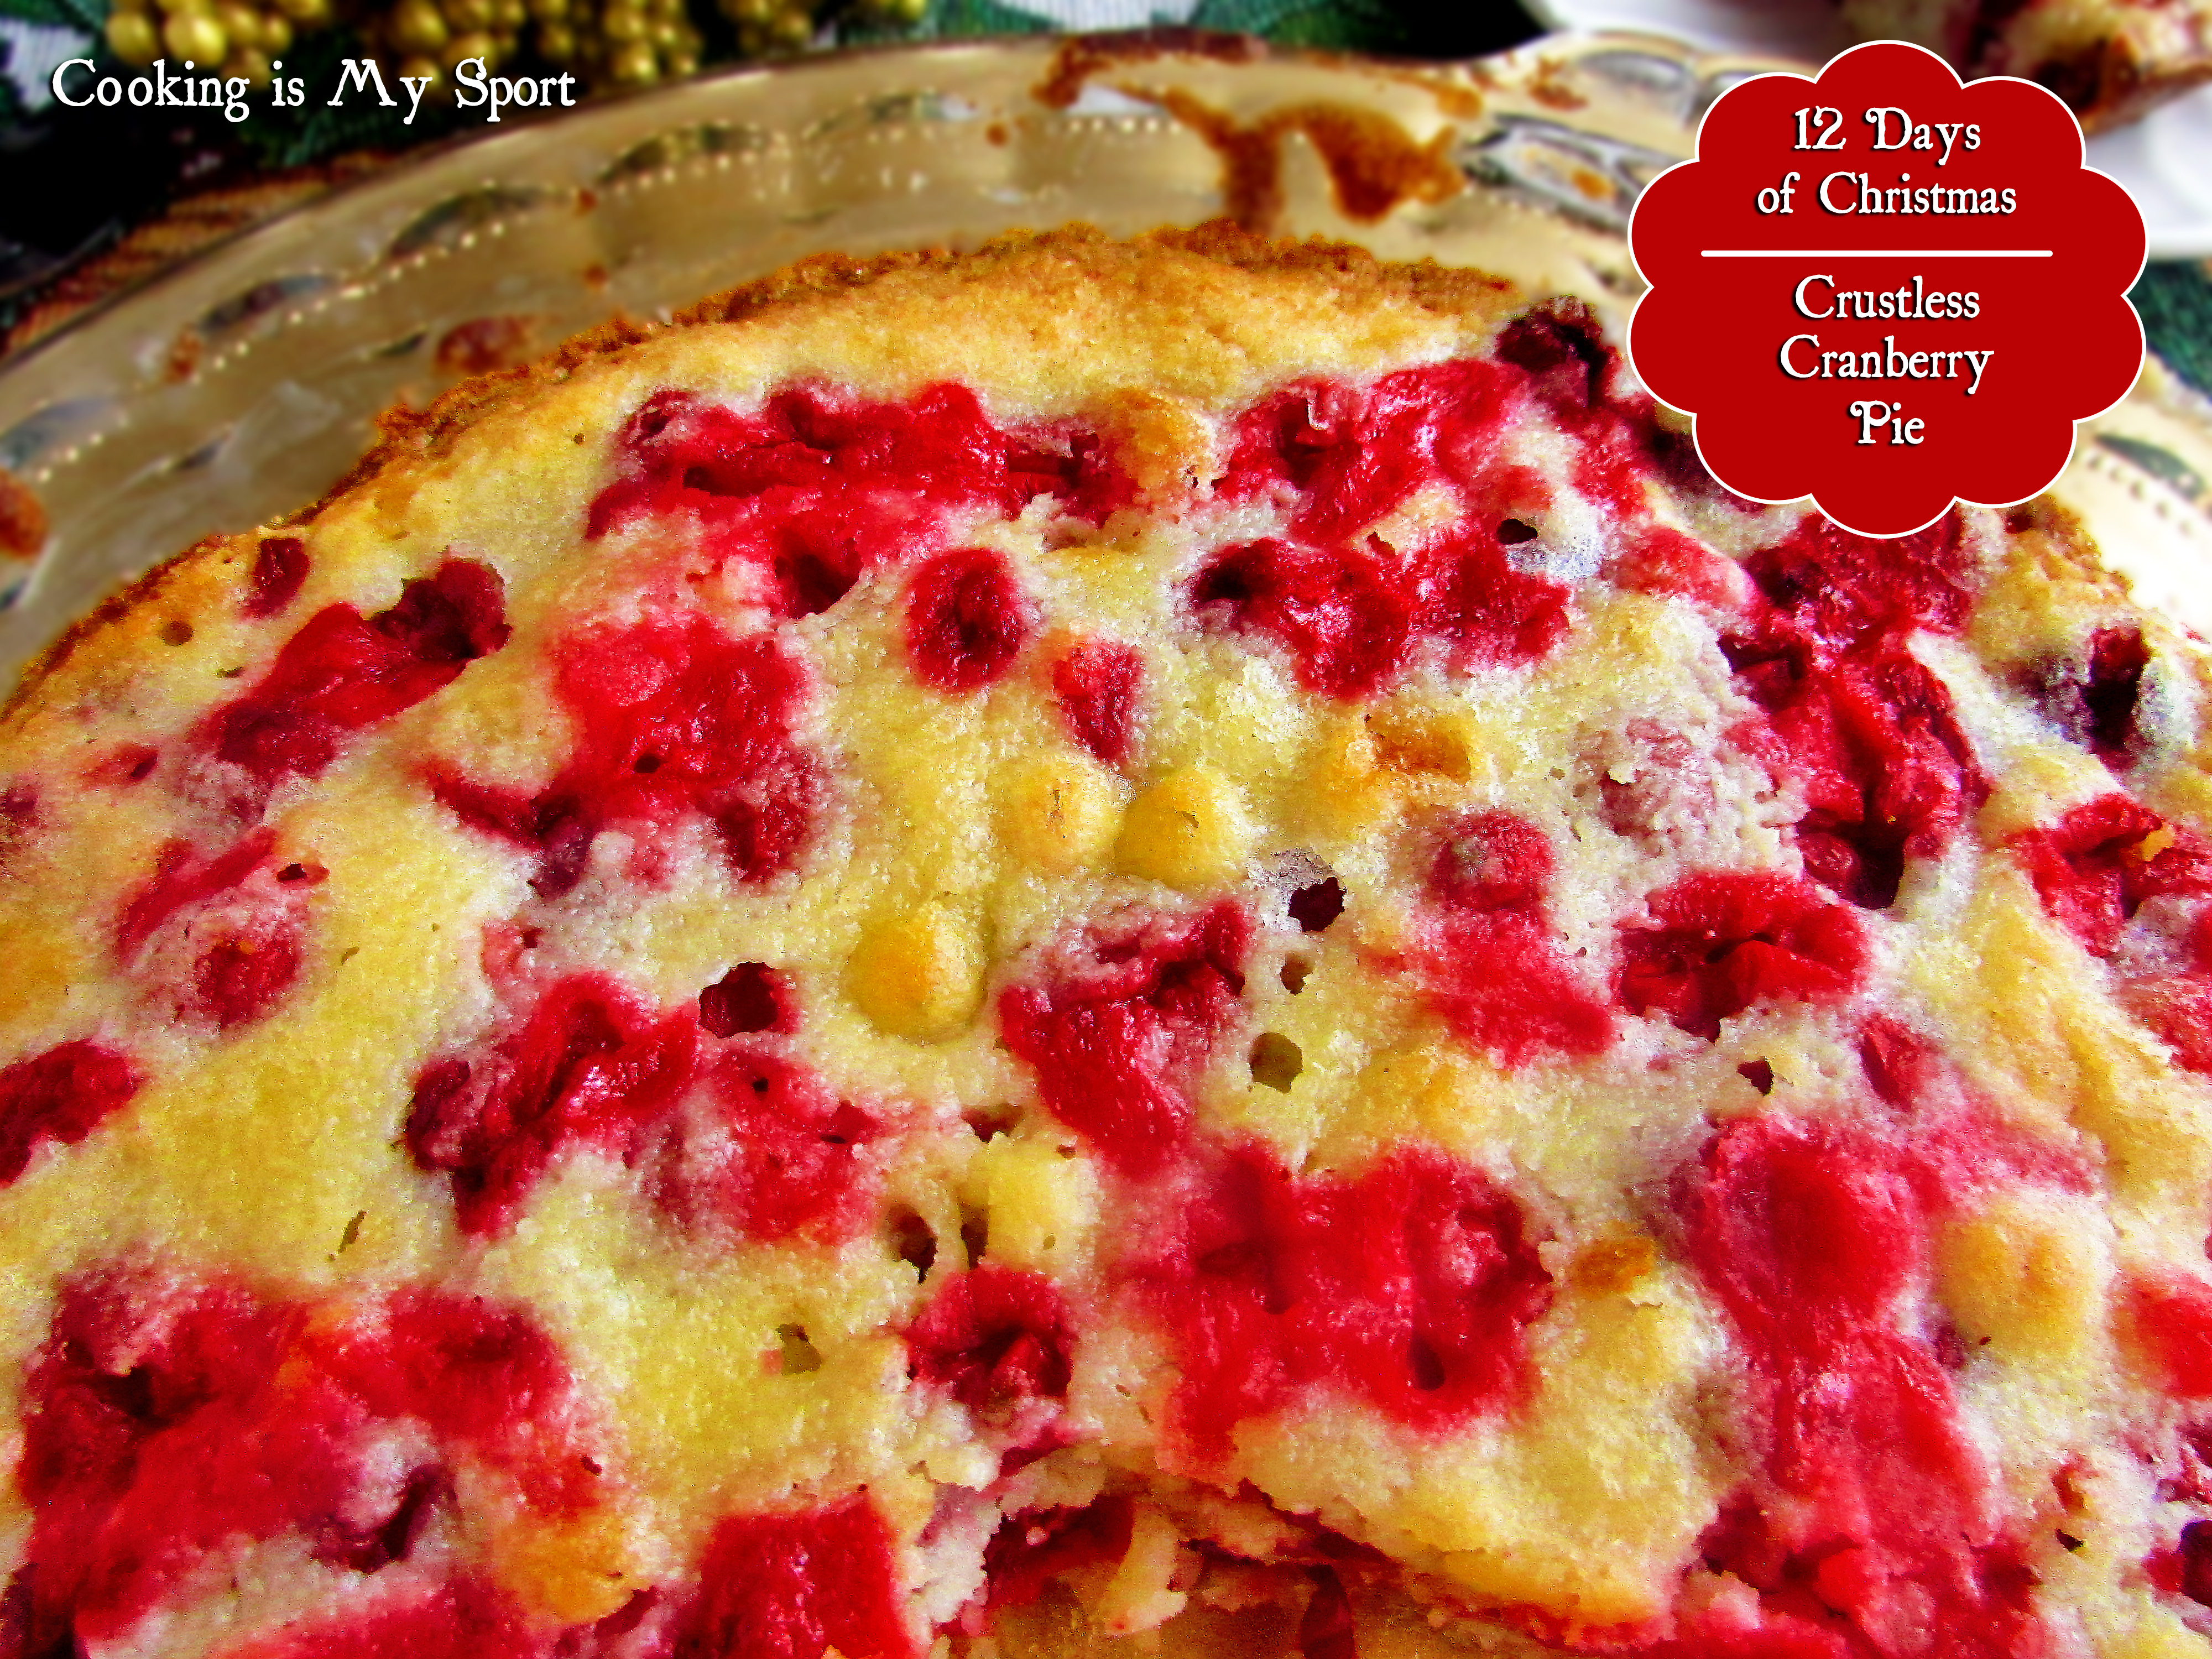 Crustless Cranberry Pie3